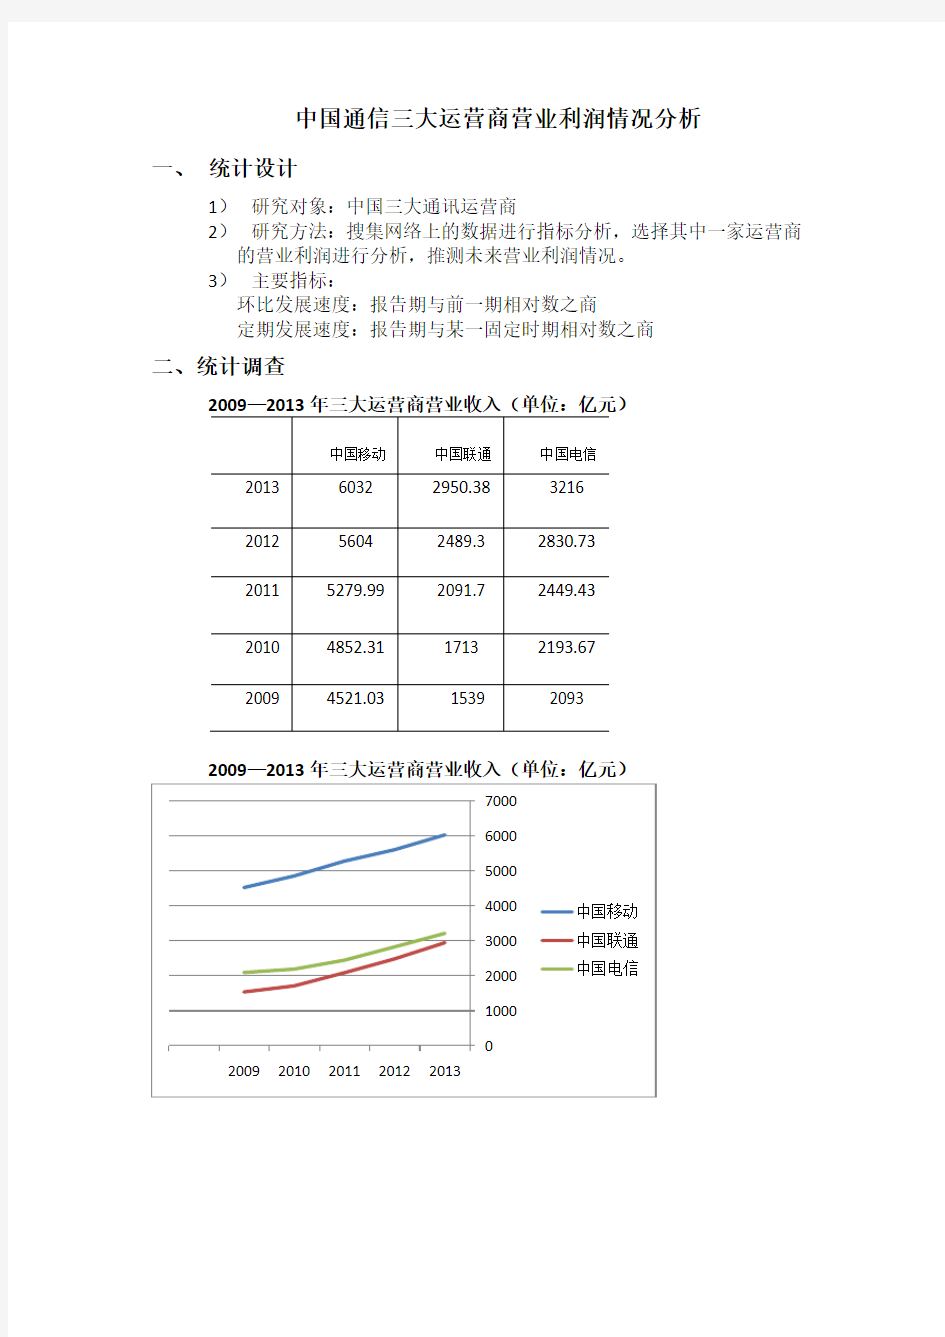 中国通信三大运营商营业利润情况分析